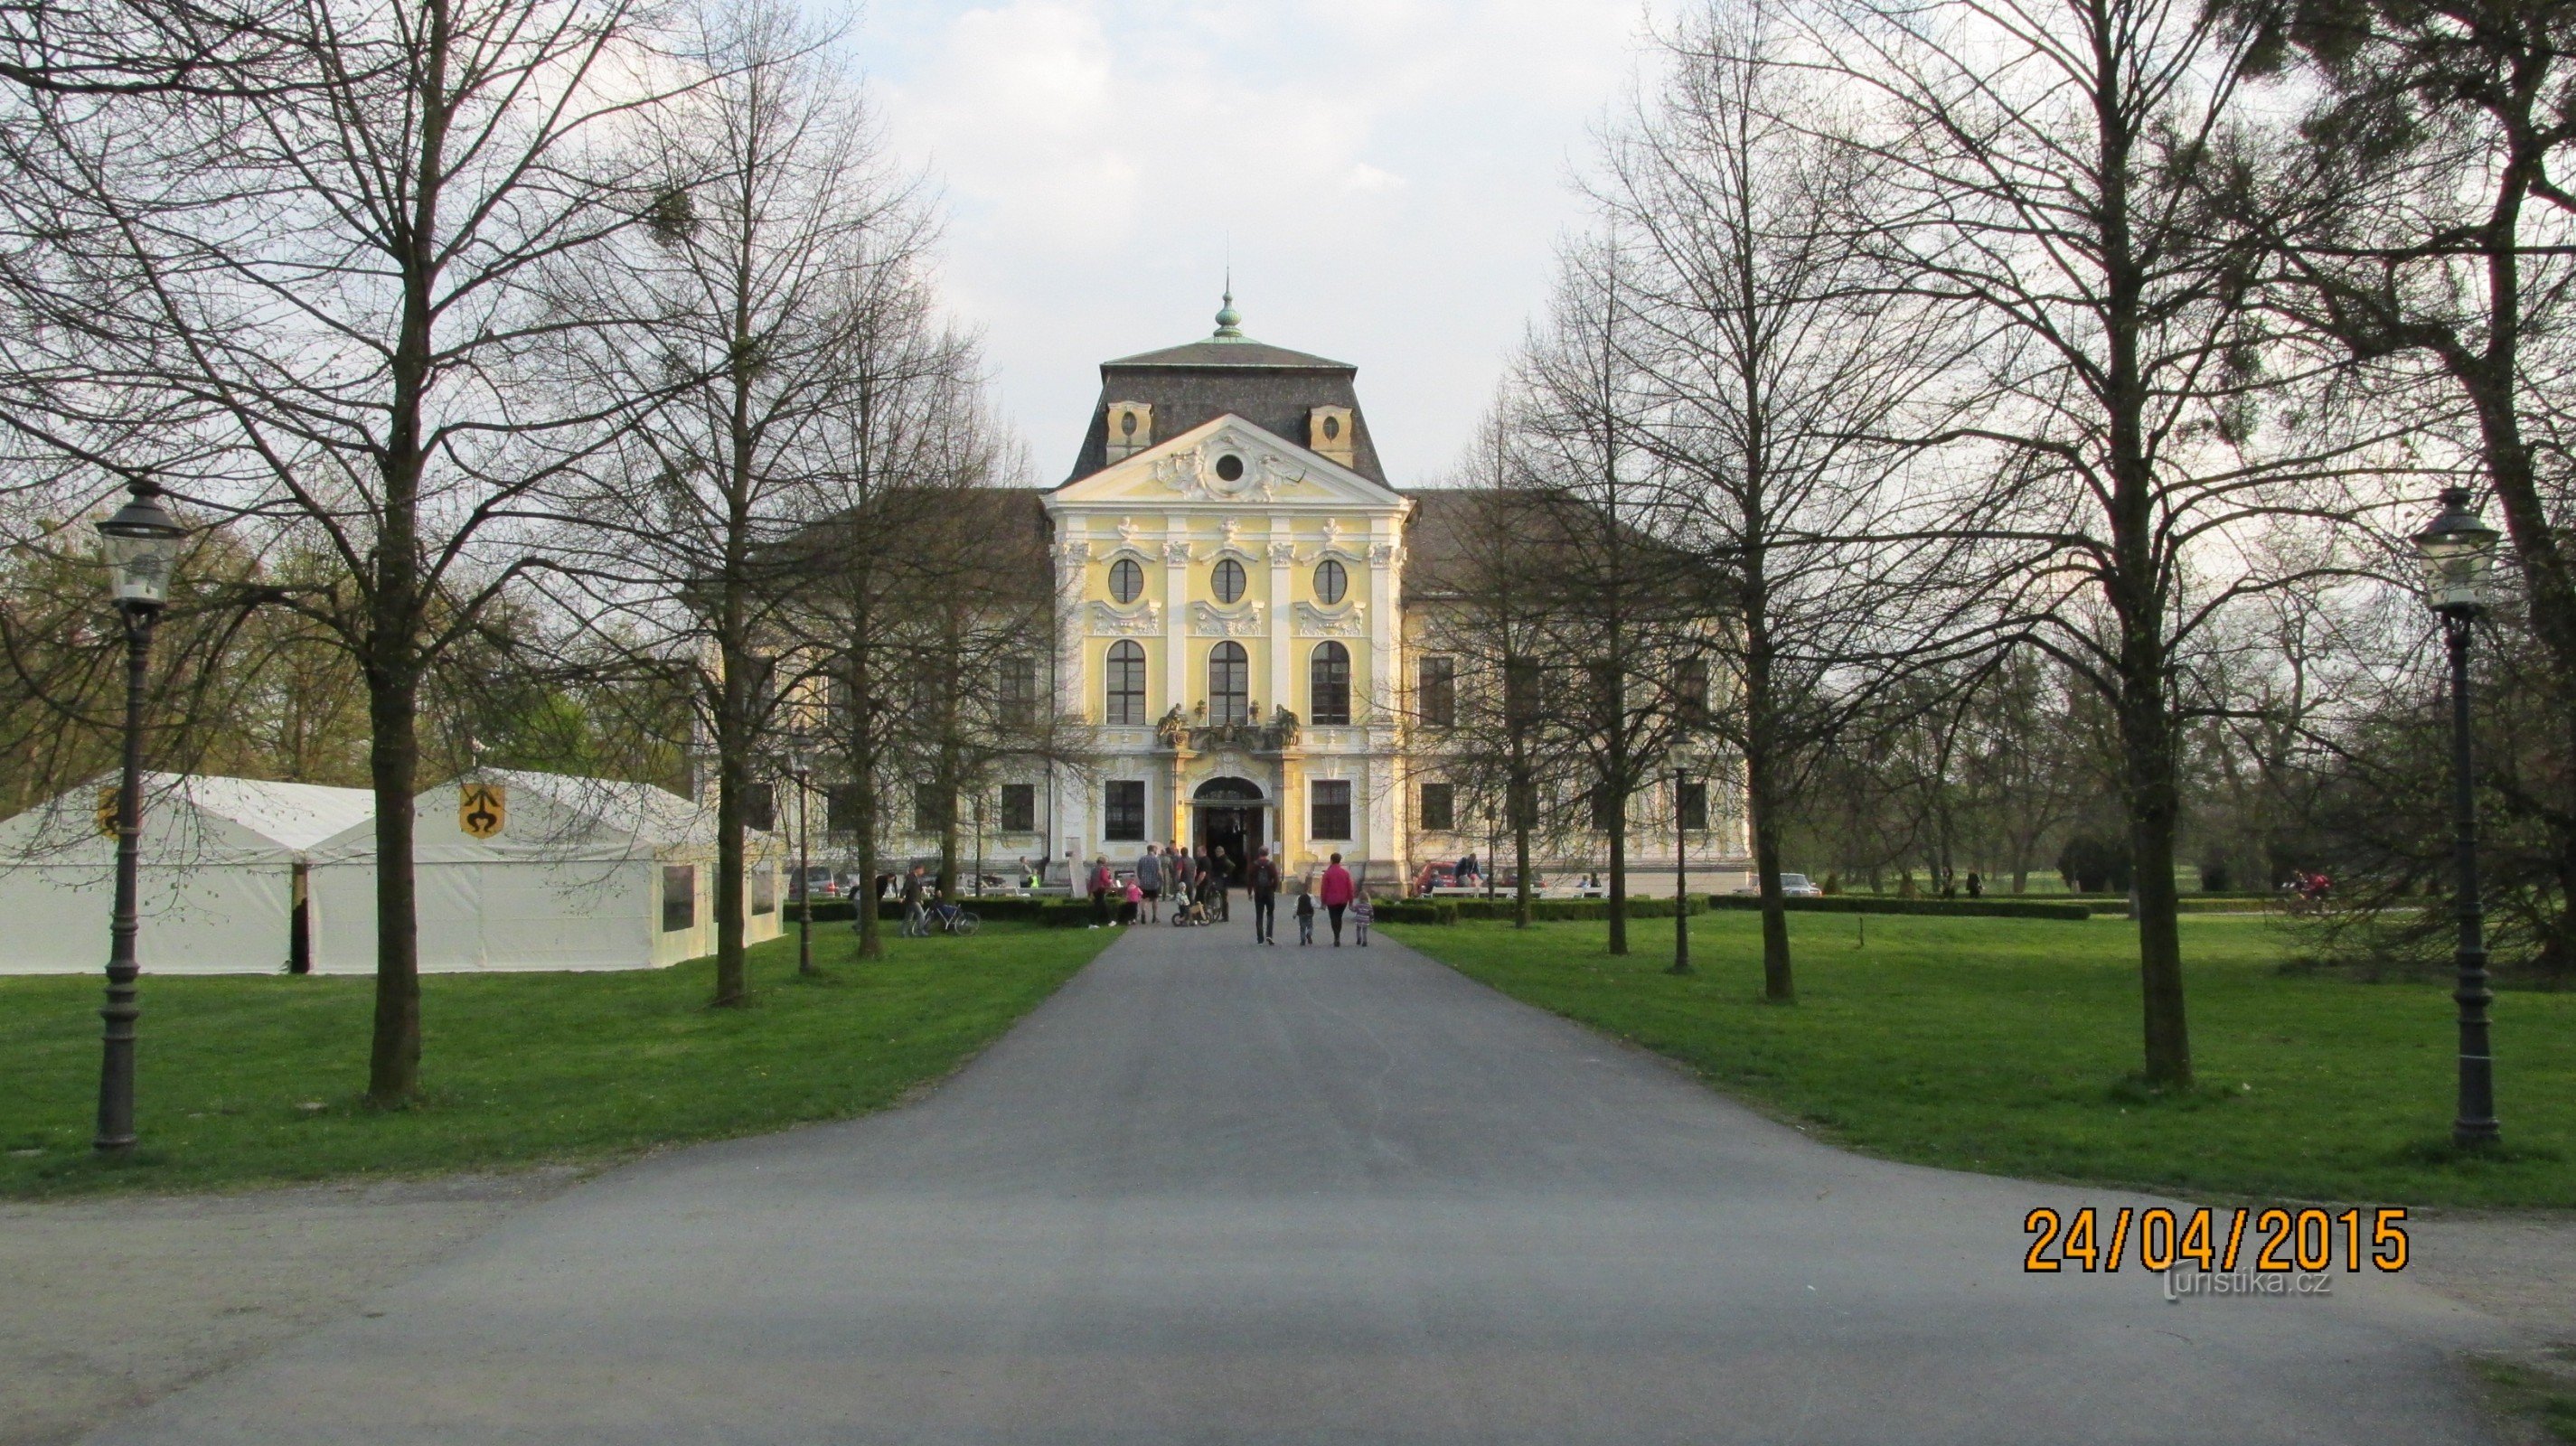 Lâu đài Kravaře: chuyến tham quan lịch sử với White Lady + dàn cảnh từ II. cuộc chiến tranh thế giới